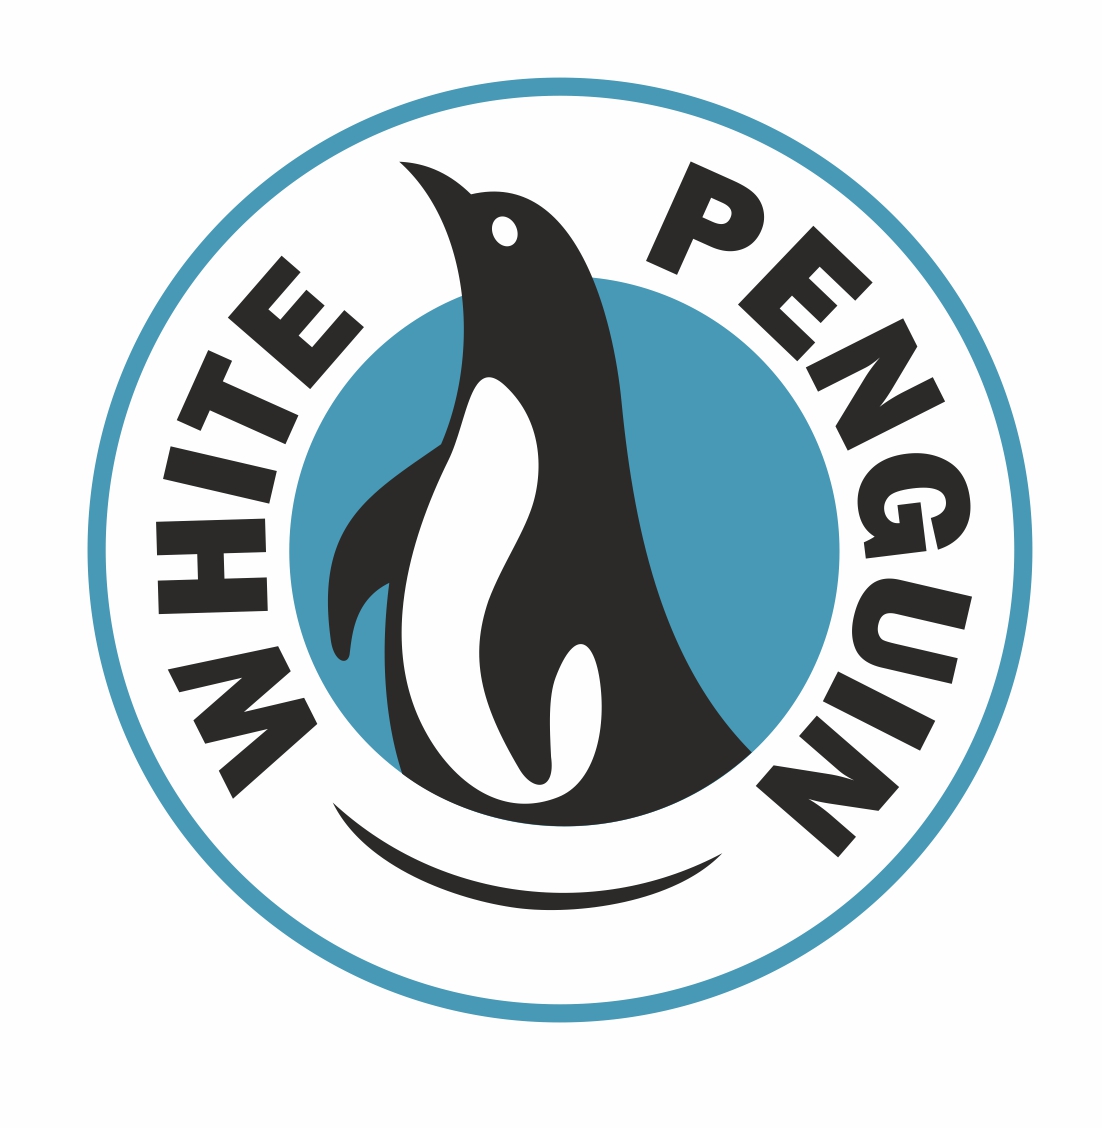 White Penguin